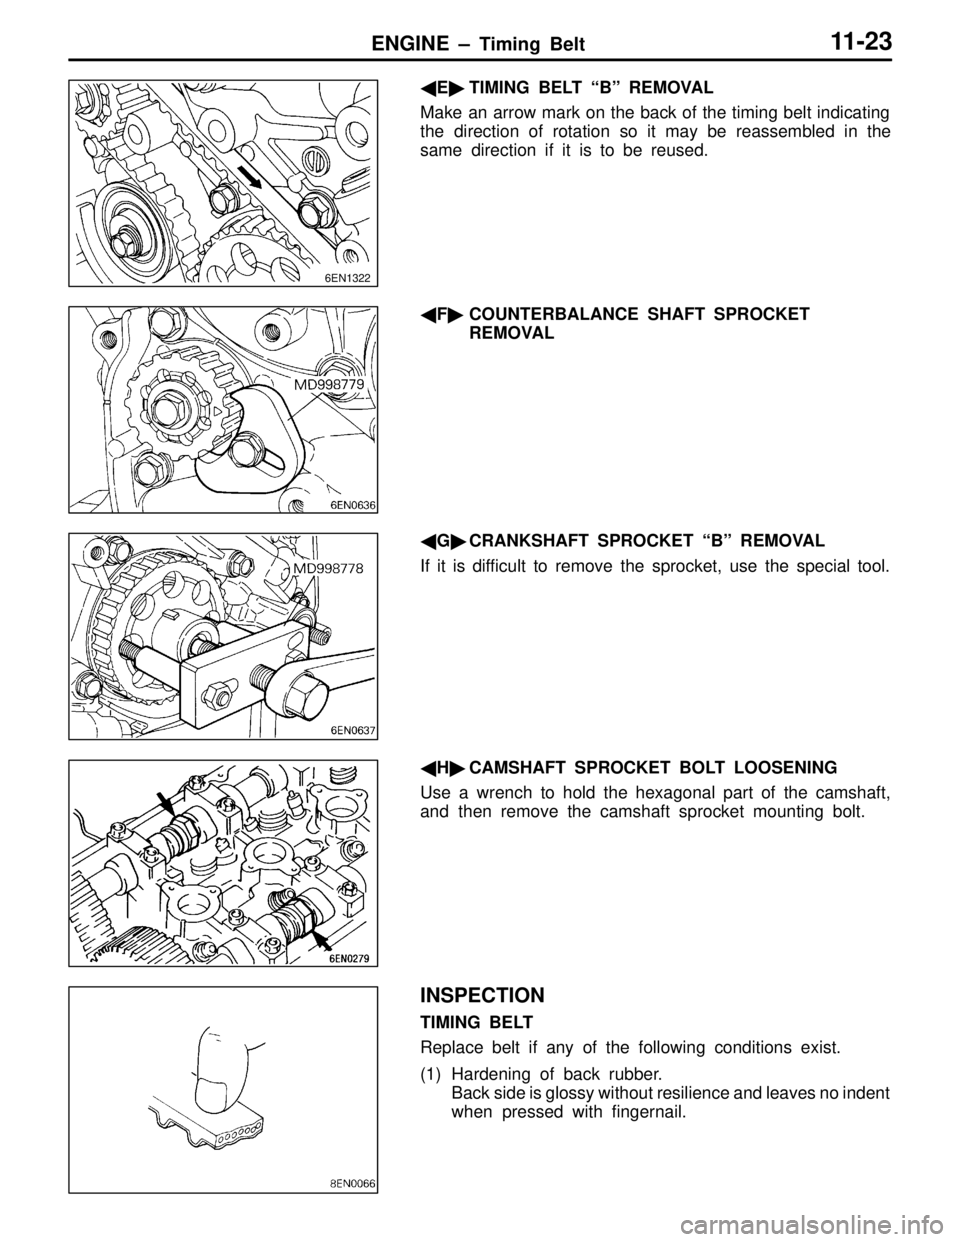 MITSUBISHI LANCER EVOLUTION IV 1998 Owners Manual ENGINE – Timing Belt11-23
ETIMING BELT “B” REMOVAL
Make an arrow mark on the back of the timing belt indicating
the direction of rotation so it may be reassembled in the
same direction if it i